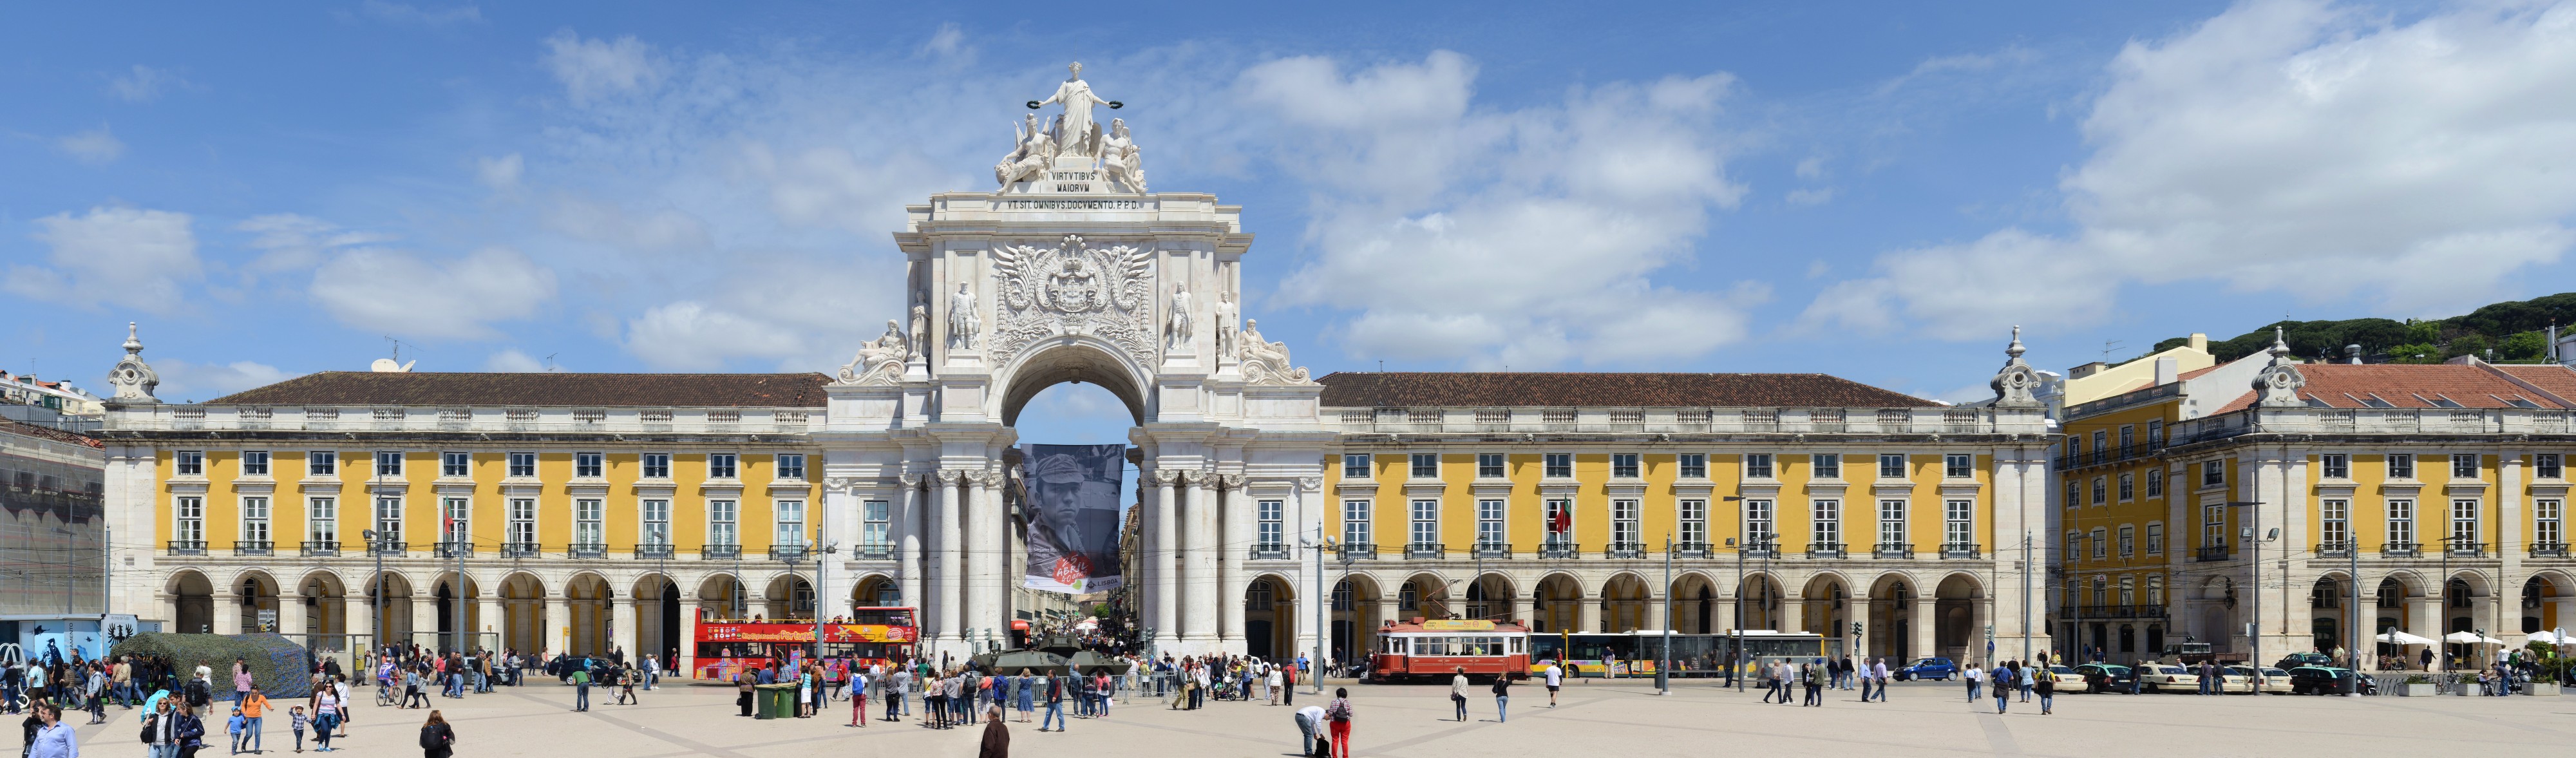 Lisboa April 2014-18a